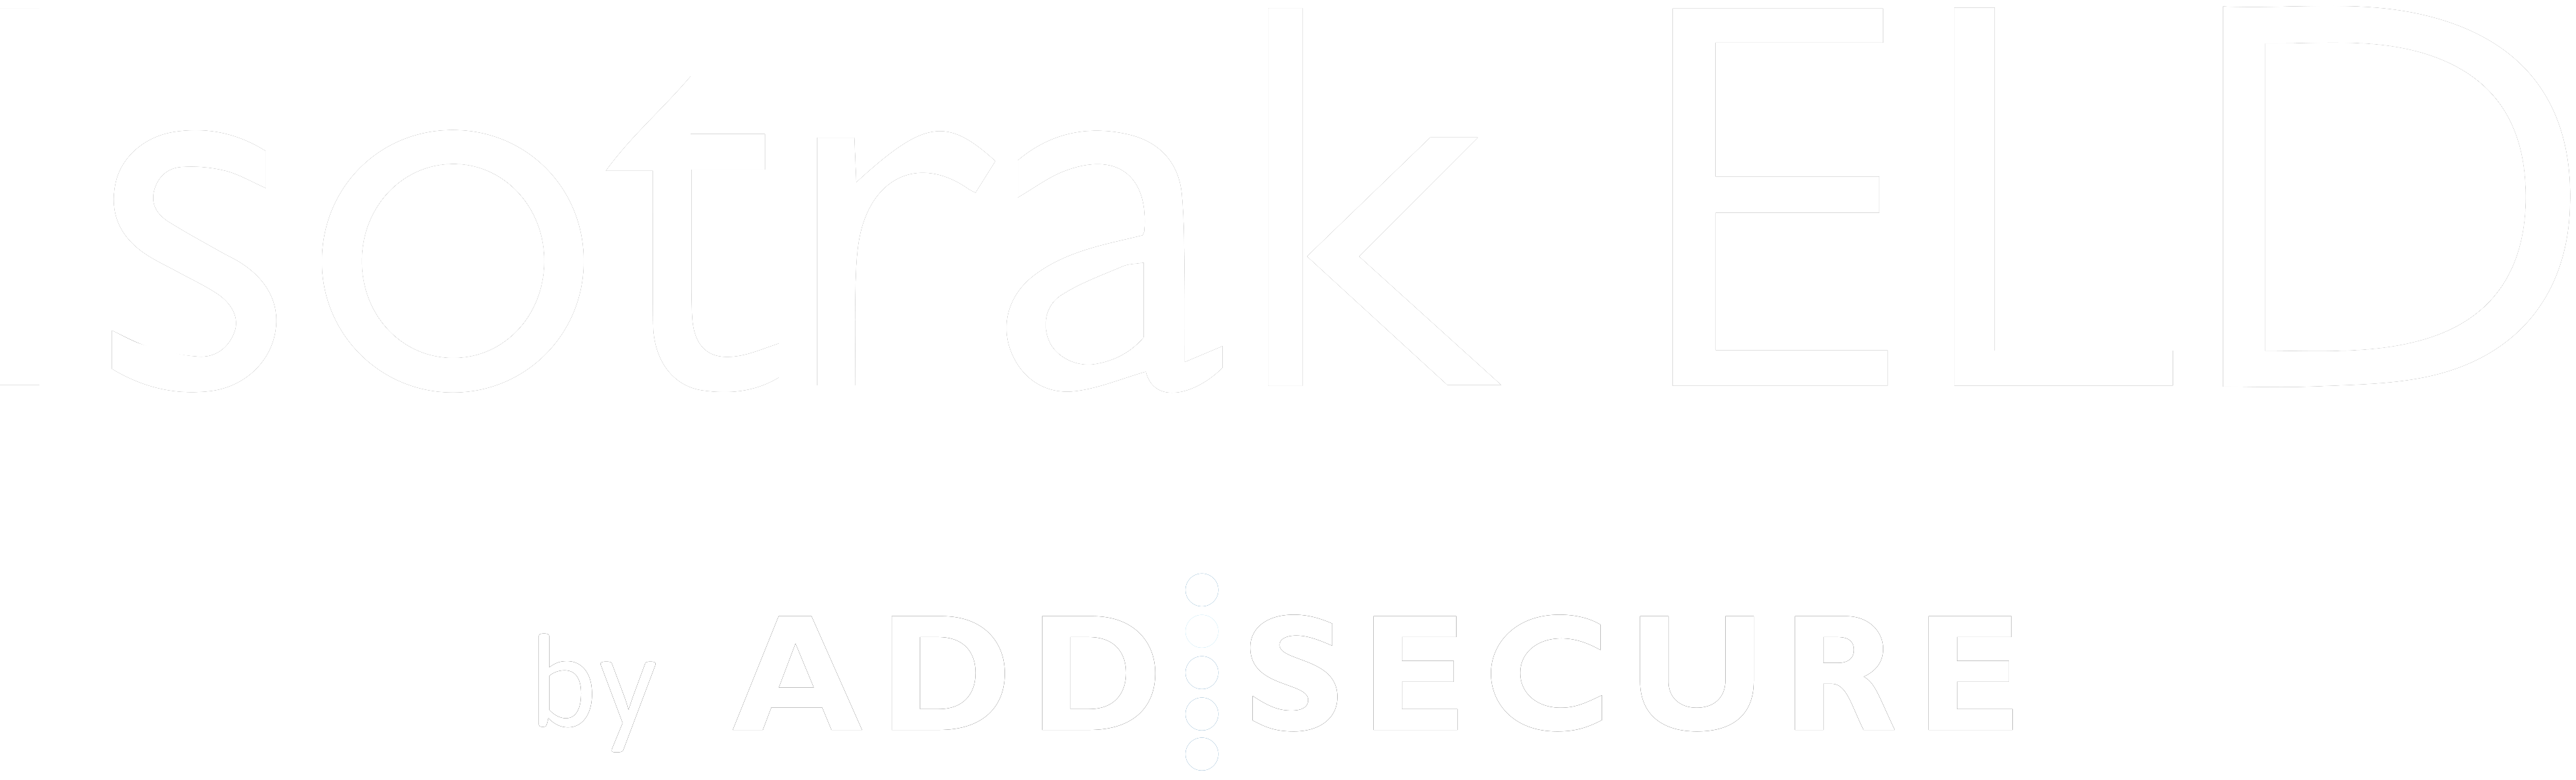 Isotrak.com